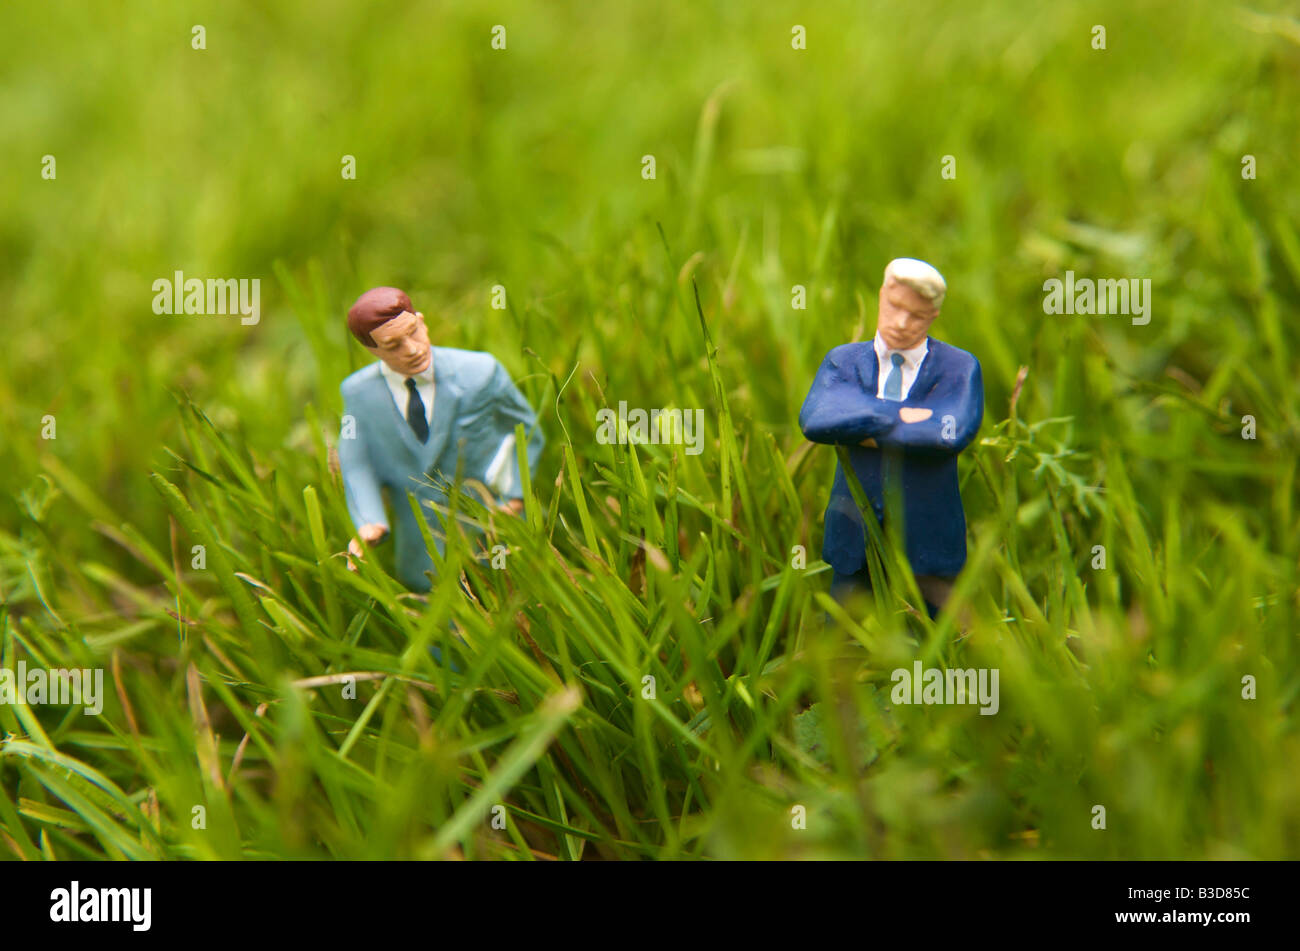 Businessmen standing dans un champ d'herbe - l'achat de terrain / vente / Construction / planification / consentement concept de ceinture verte Banque D'Images